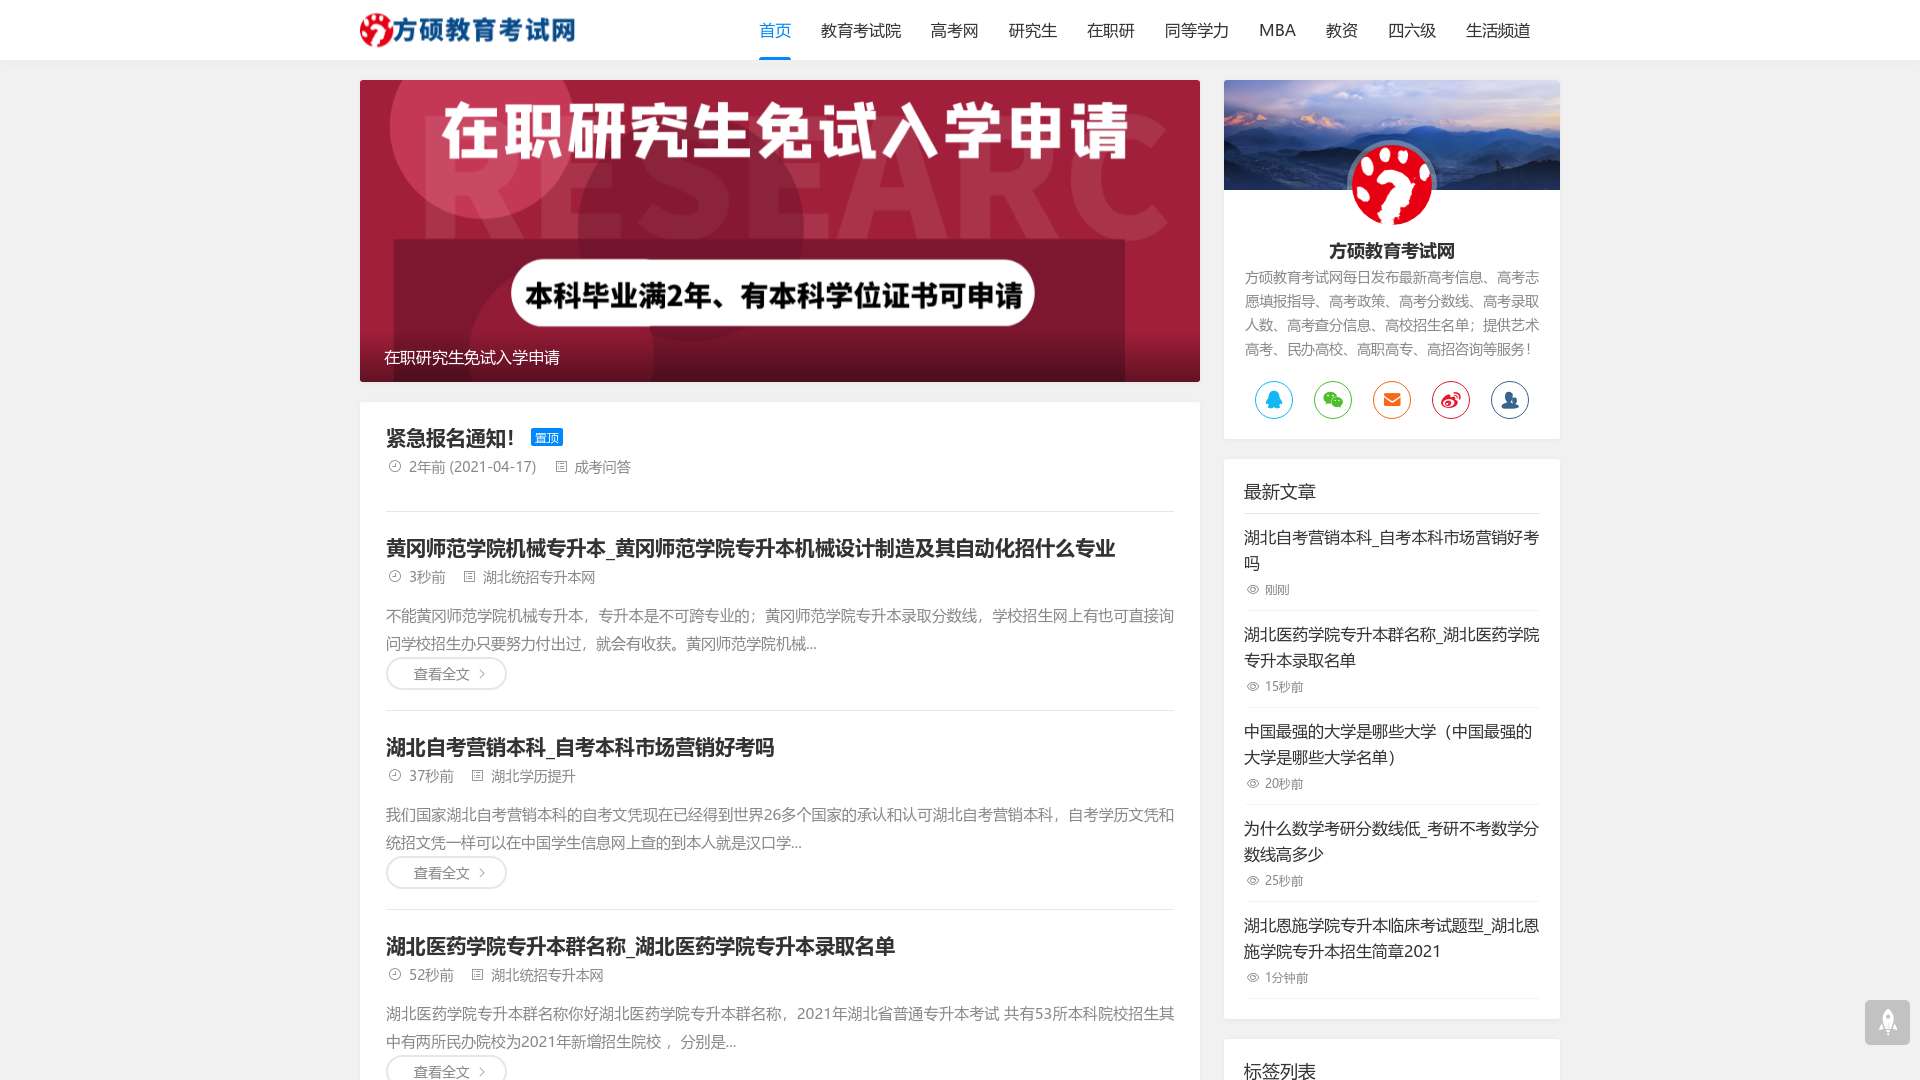 中国教育考试网—首页截图时间：2022-12-09